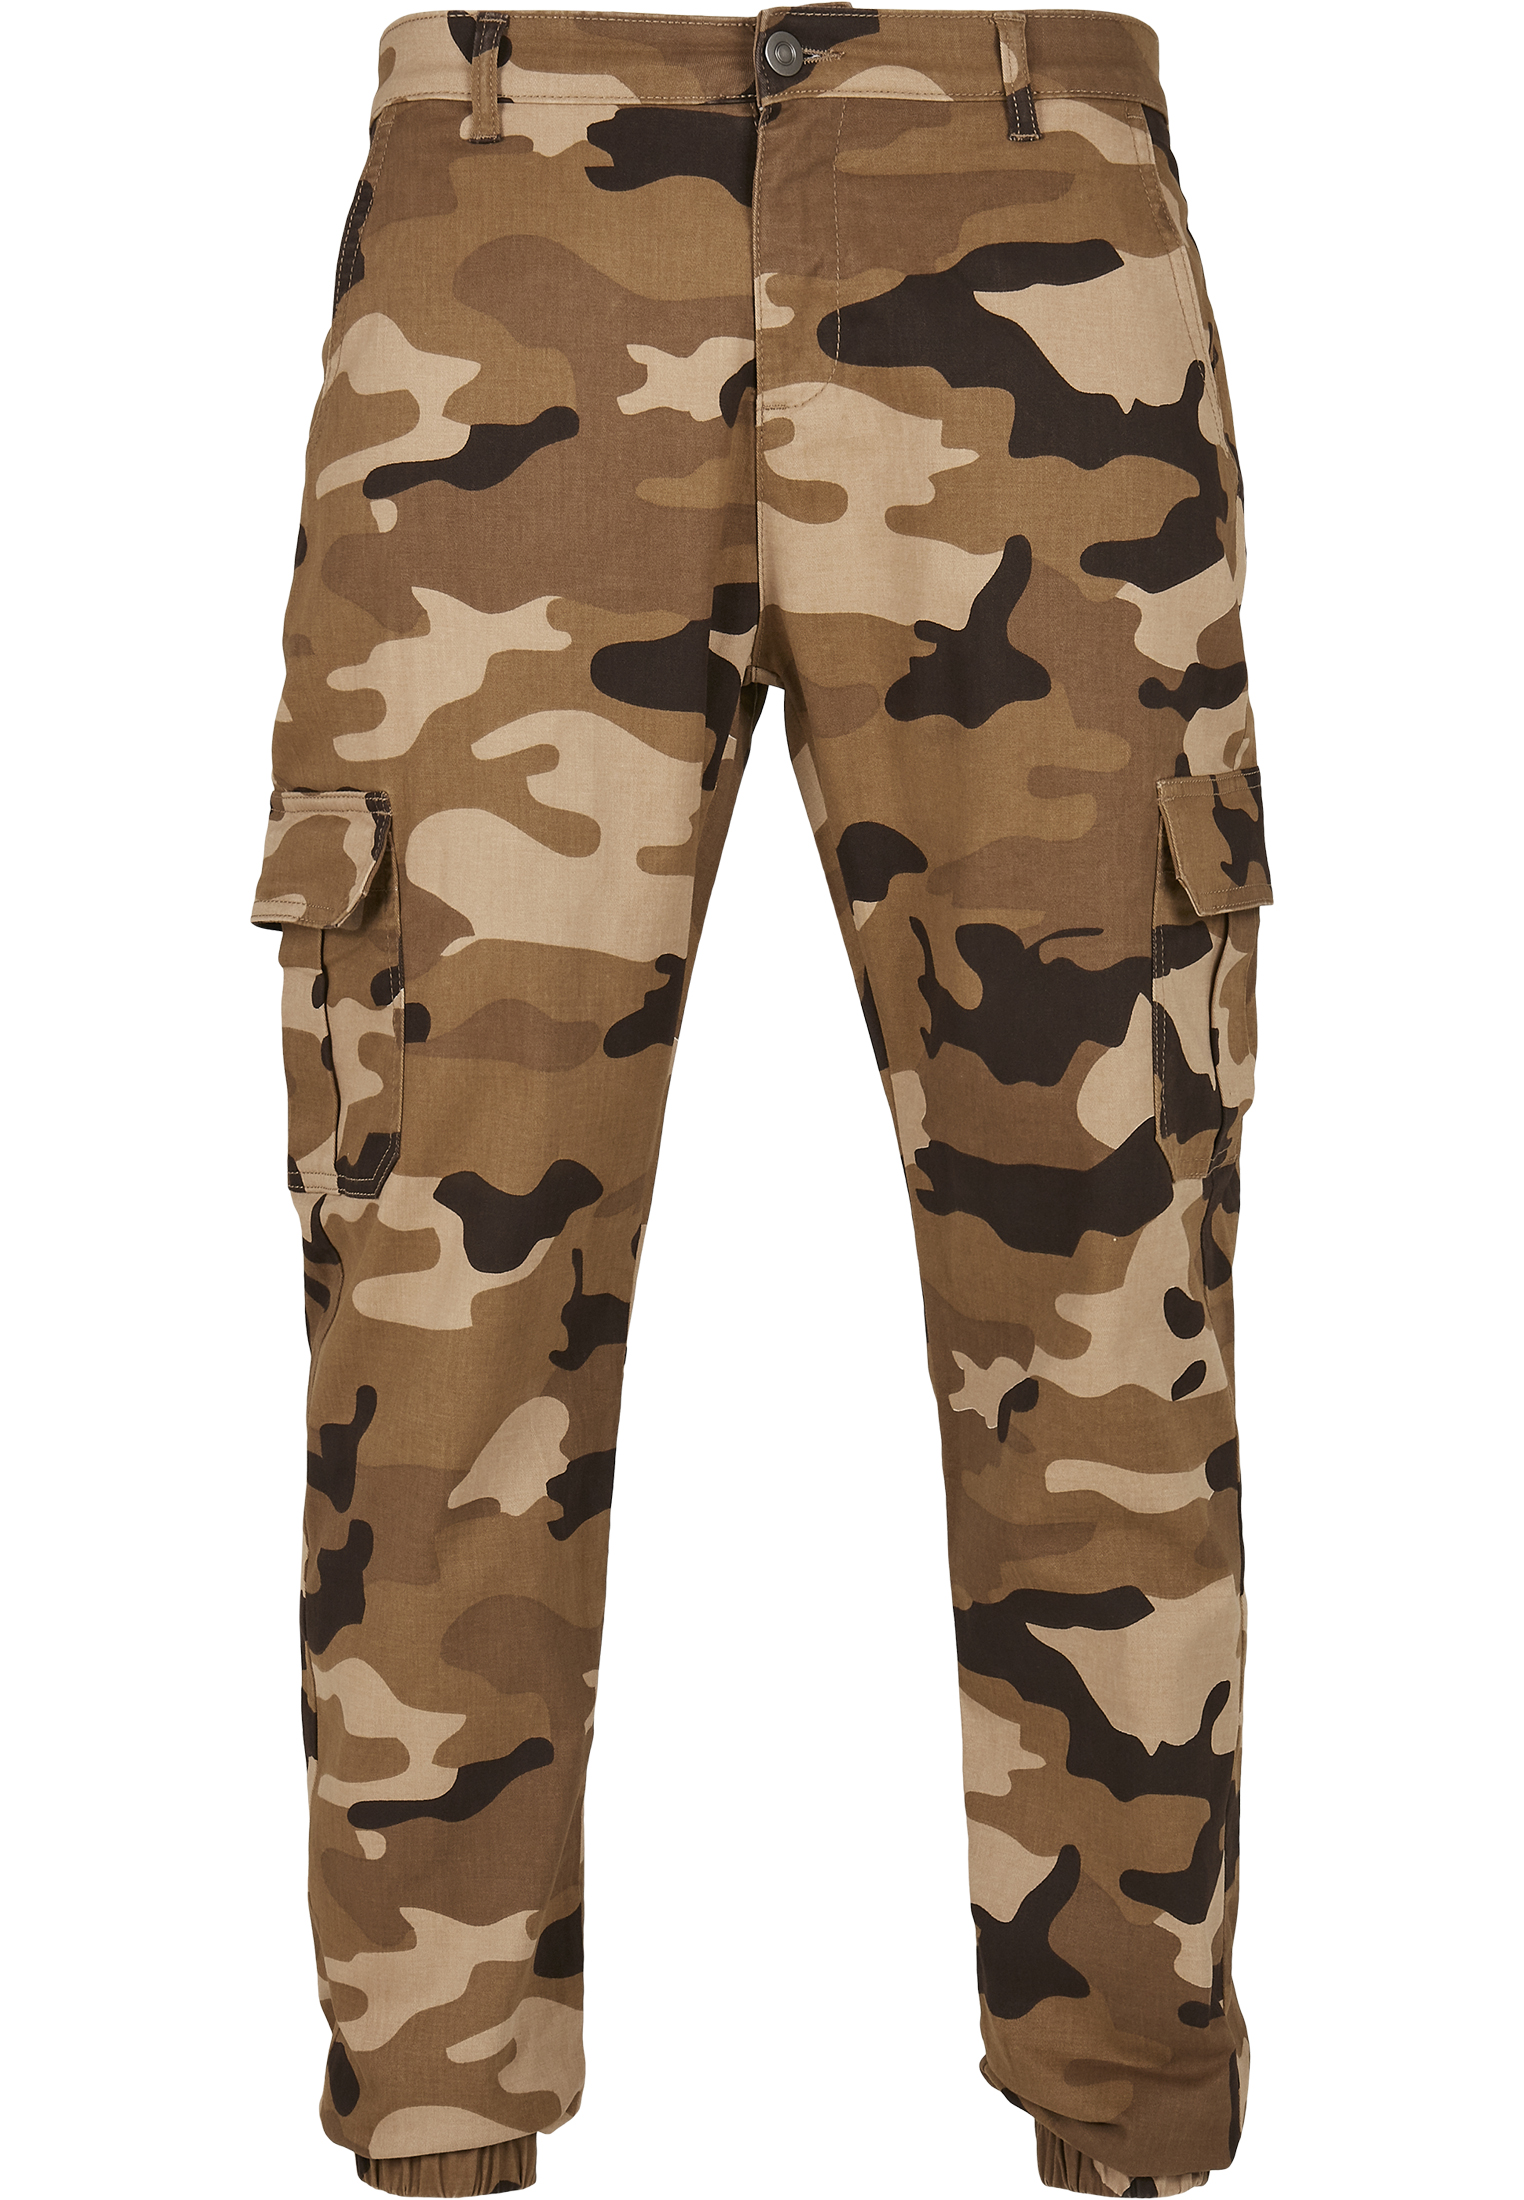 Cargo Hosen & Shorts Camo Cargo Jogging Pants 2.0 in Farbe darkground camo